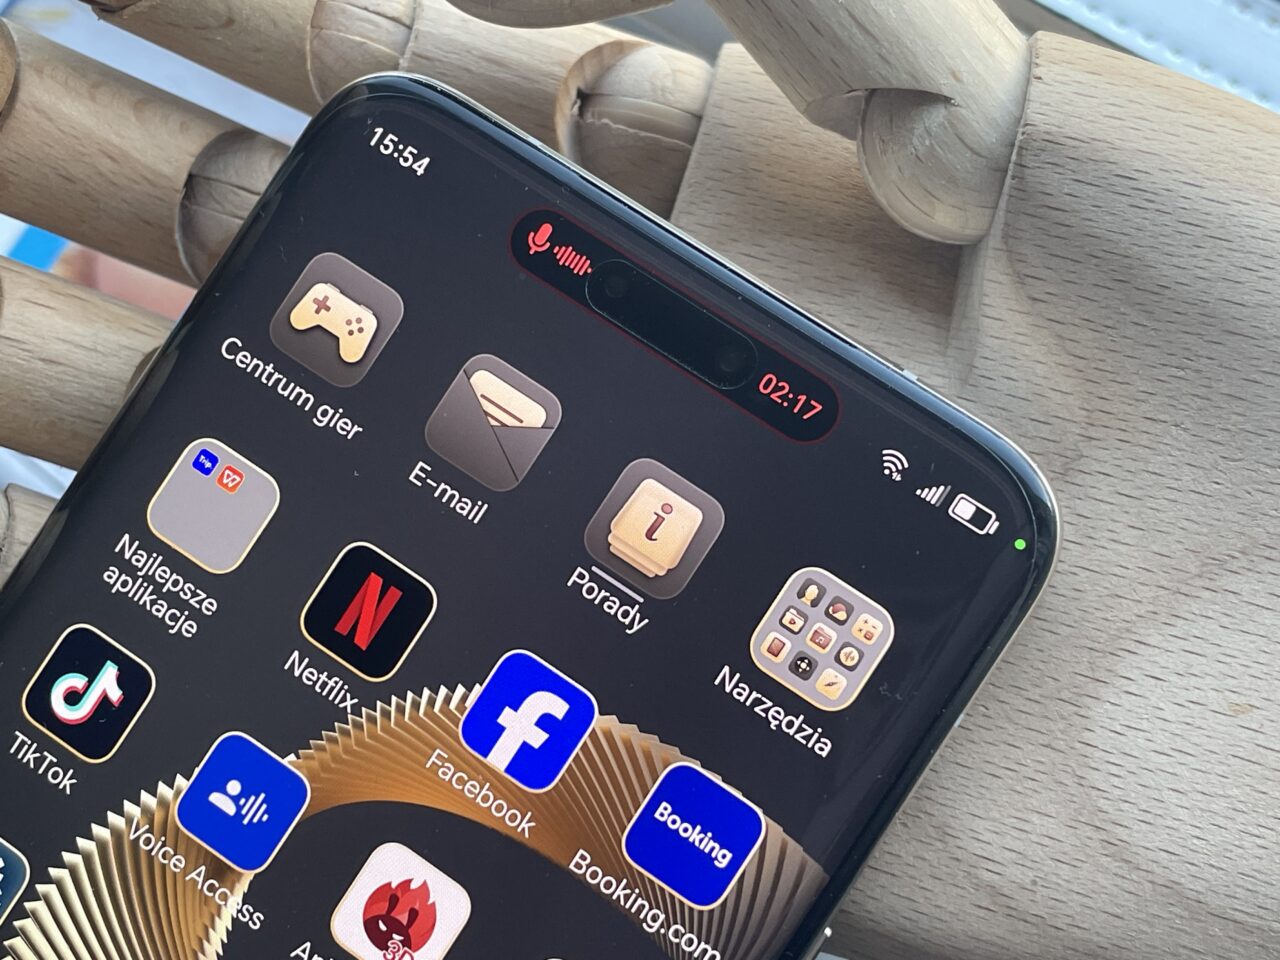 Smartfon z ekranem pokazującym kolorowe ikony aplikacji, takie jak Centrum gier, E-mail, Netflix, Facebook, TikTok i inne, z zaznaczonym górnym paskiem stanu o godzinie 15:34, poziomem baterii oraz połączeniem Wi-Fi i sygnałem sieci komórkowej.